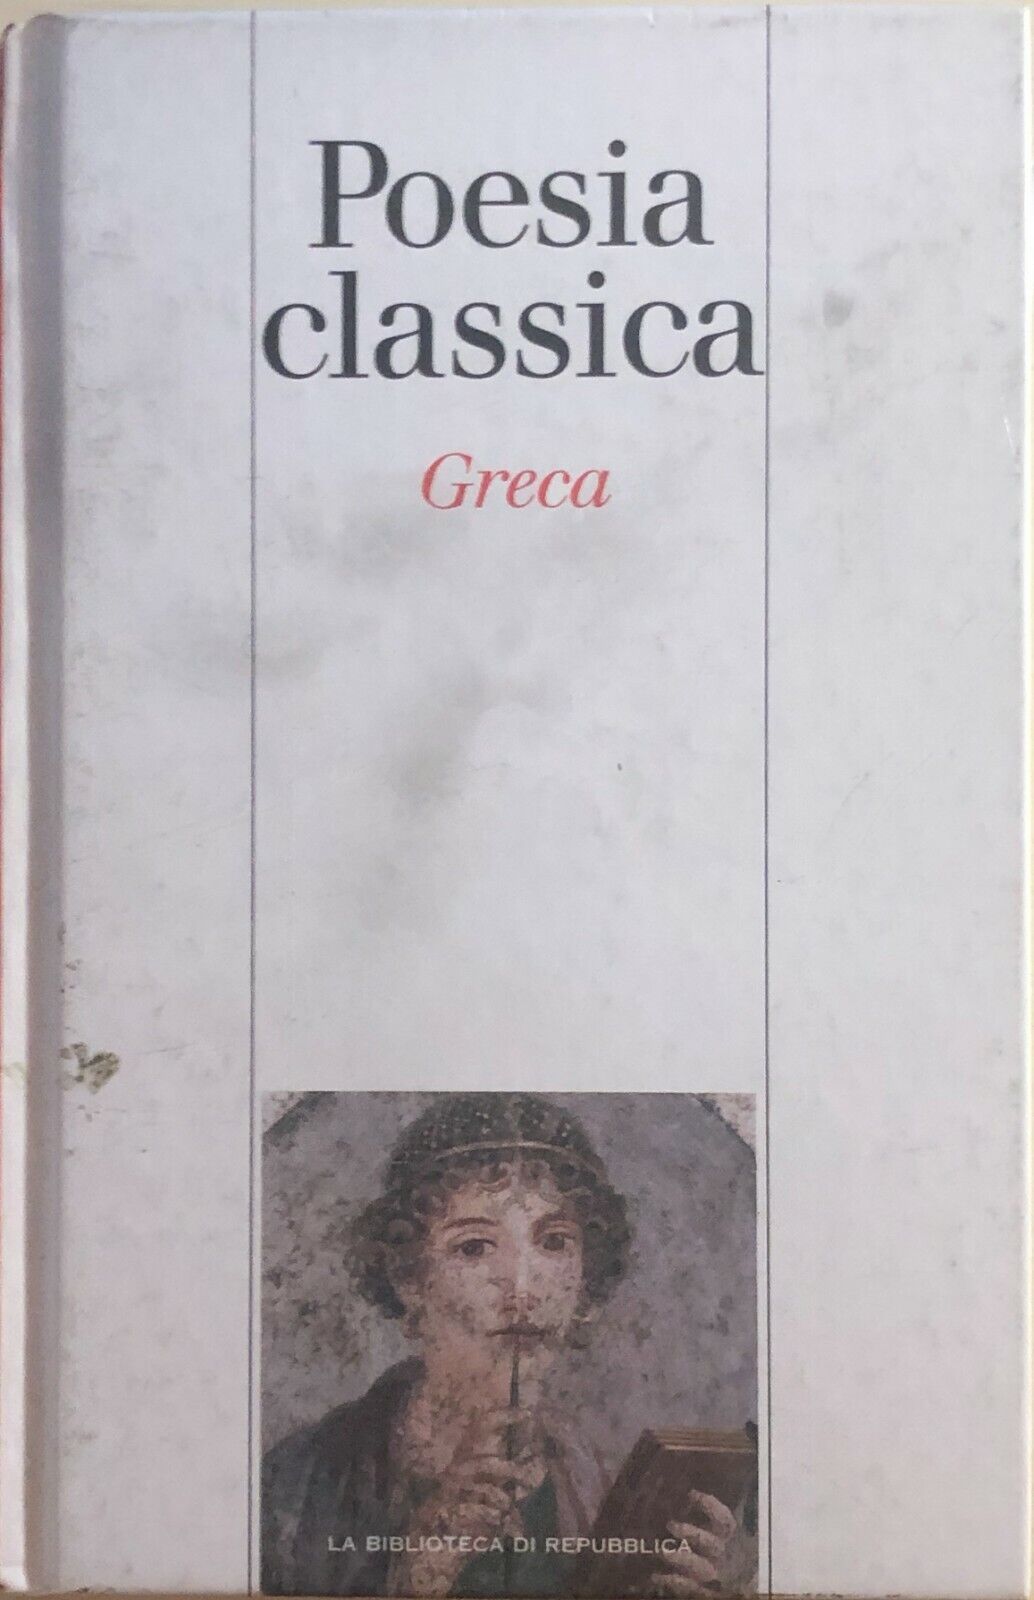 Poesia classica greca di Aa.vv., 2004, La Repubblica